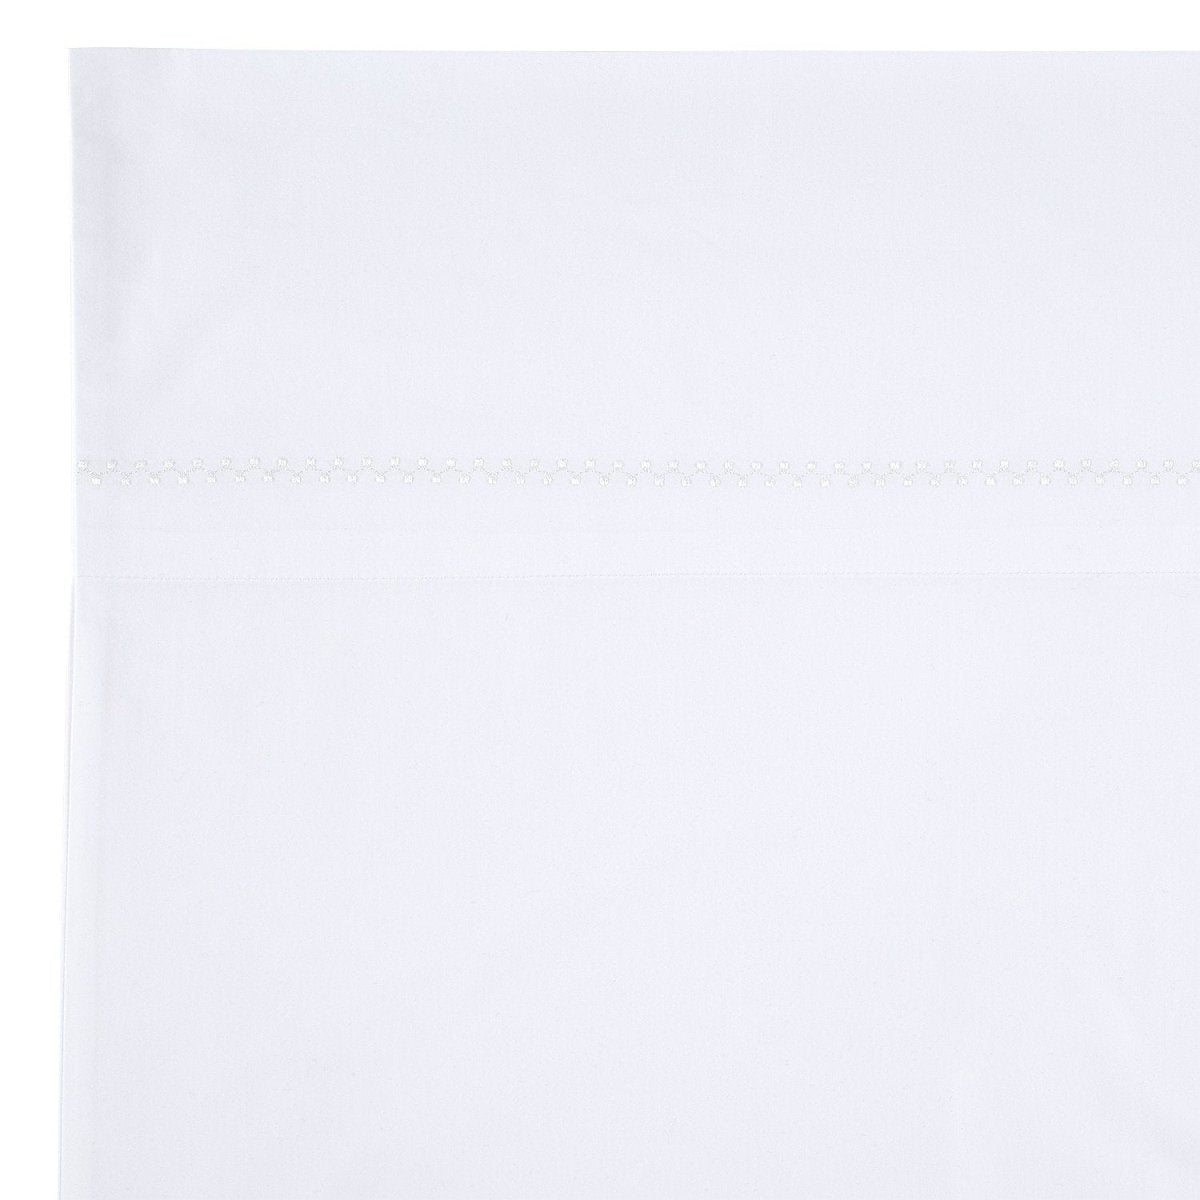 Bed Sheet Set - Organic Cotton Anketi Bedding by John Robshaw - Flat Sheet Detail